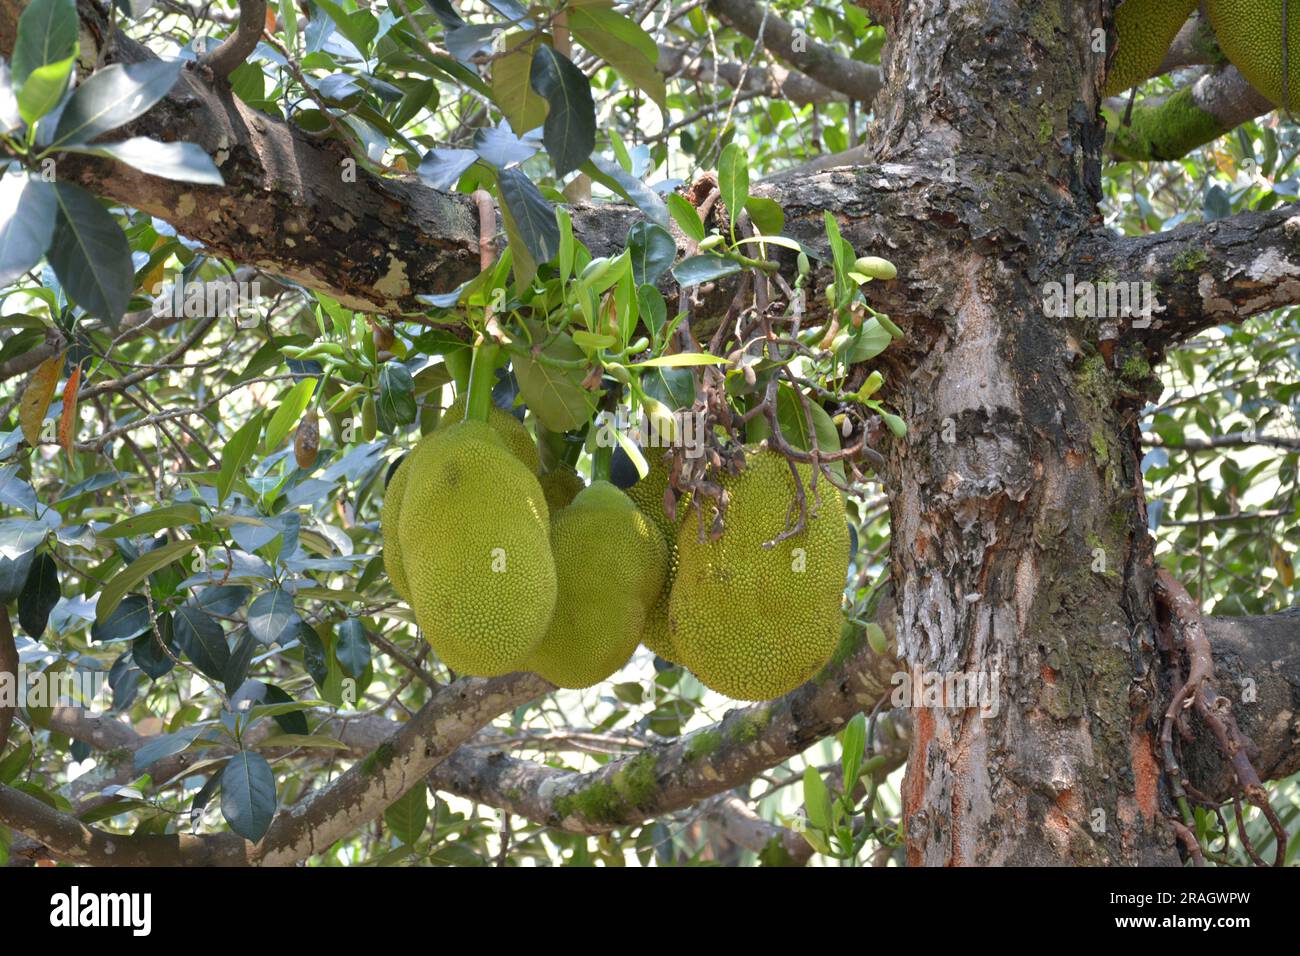 raw Artocarpus heterophyllus fruit hang on the branch in the garden Stock Photo